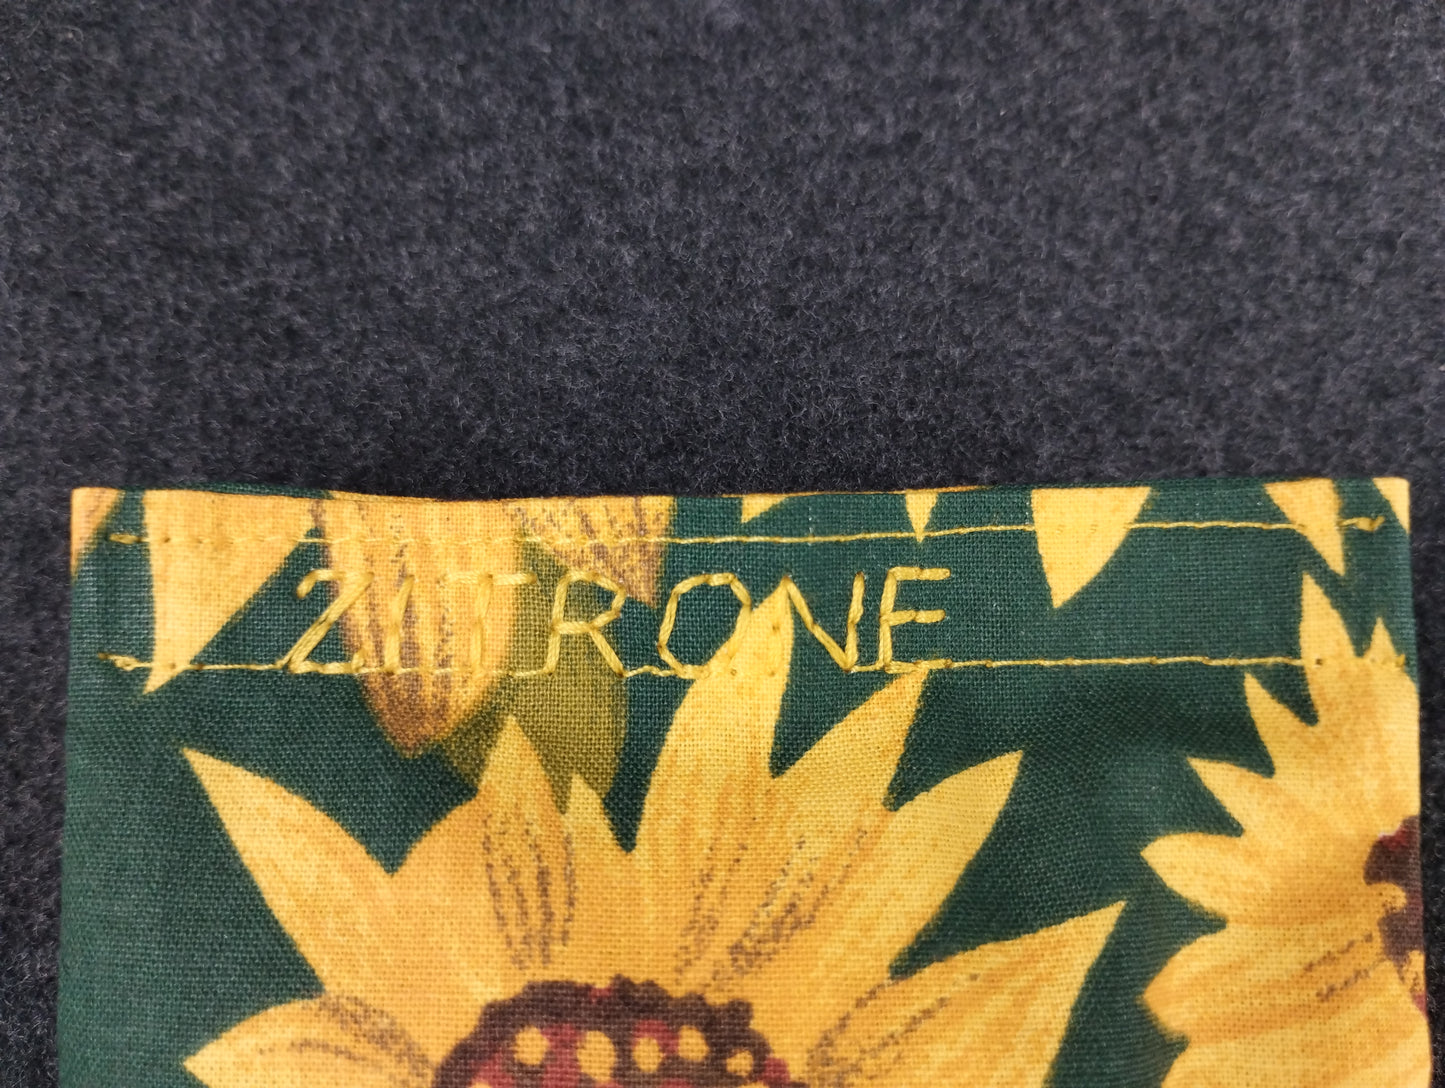 fertiges Duftkissen mit Sonnenblumenmotiven auf grünem Hintergrund. Personalisiert in gelb mit der Aufschrift Zitrone